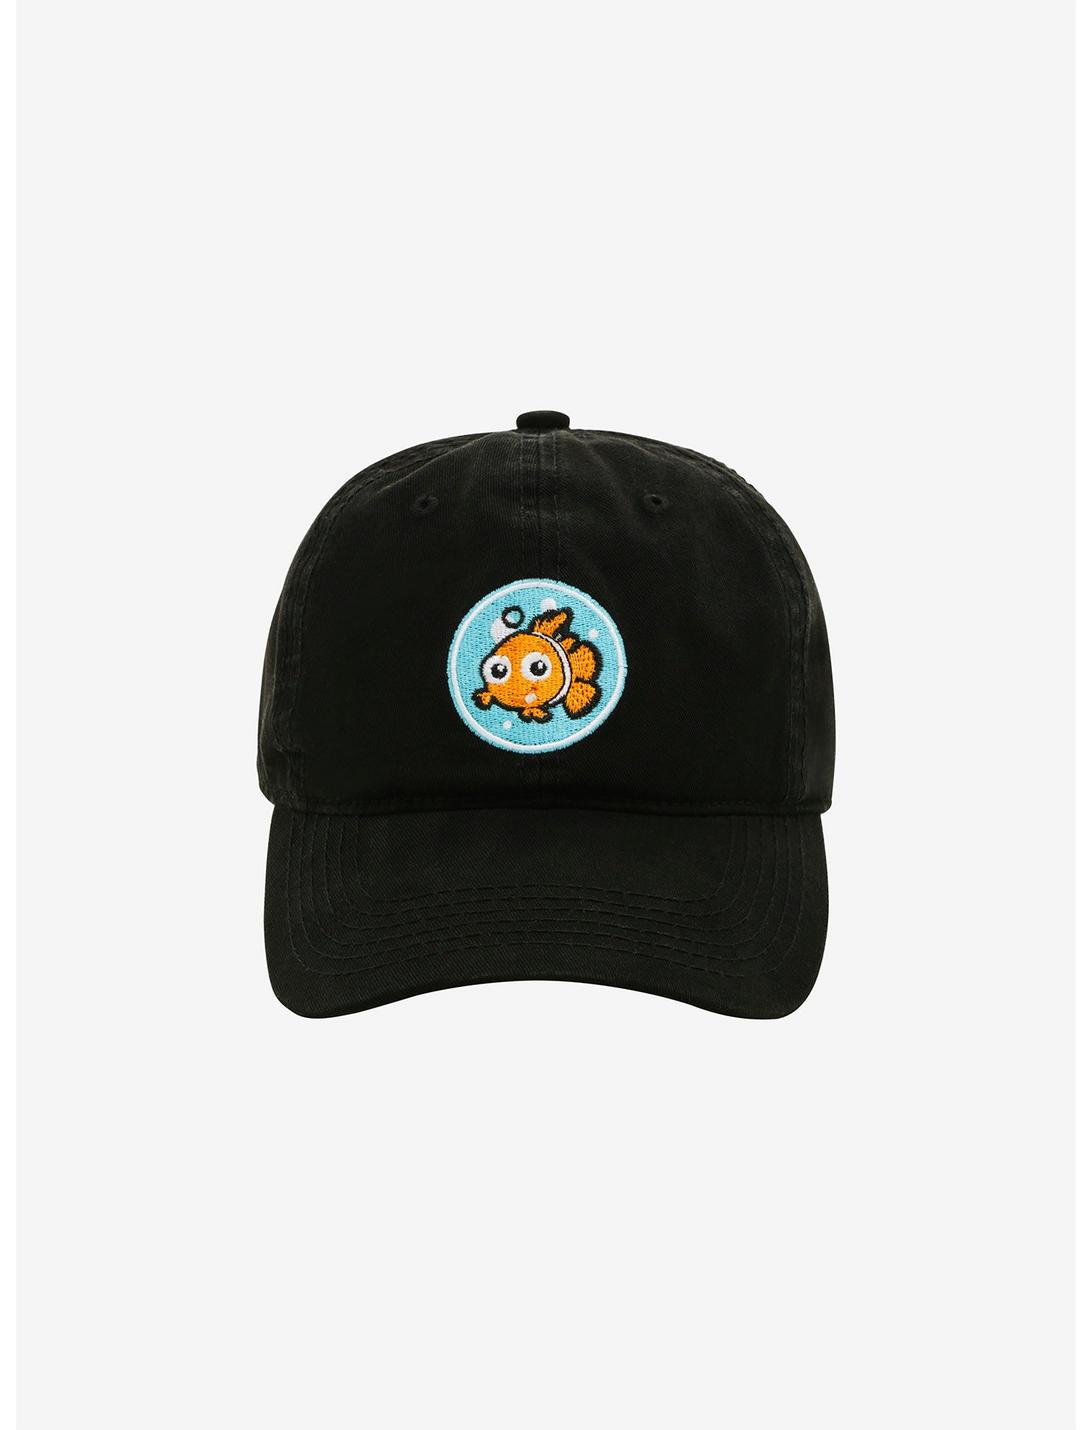 Disney Pixar Finding Nemo Dad Hat, , hi-res